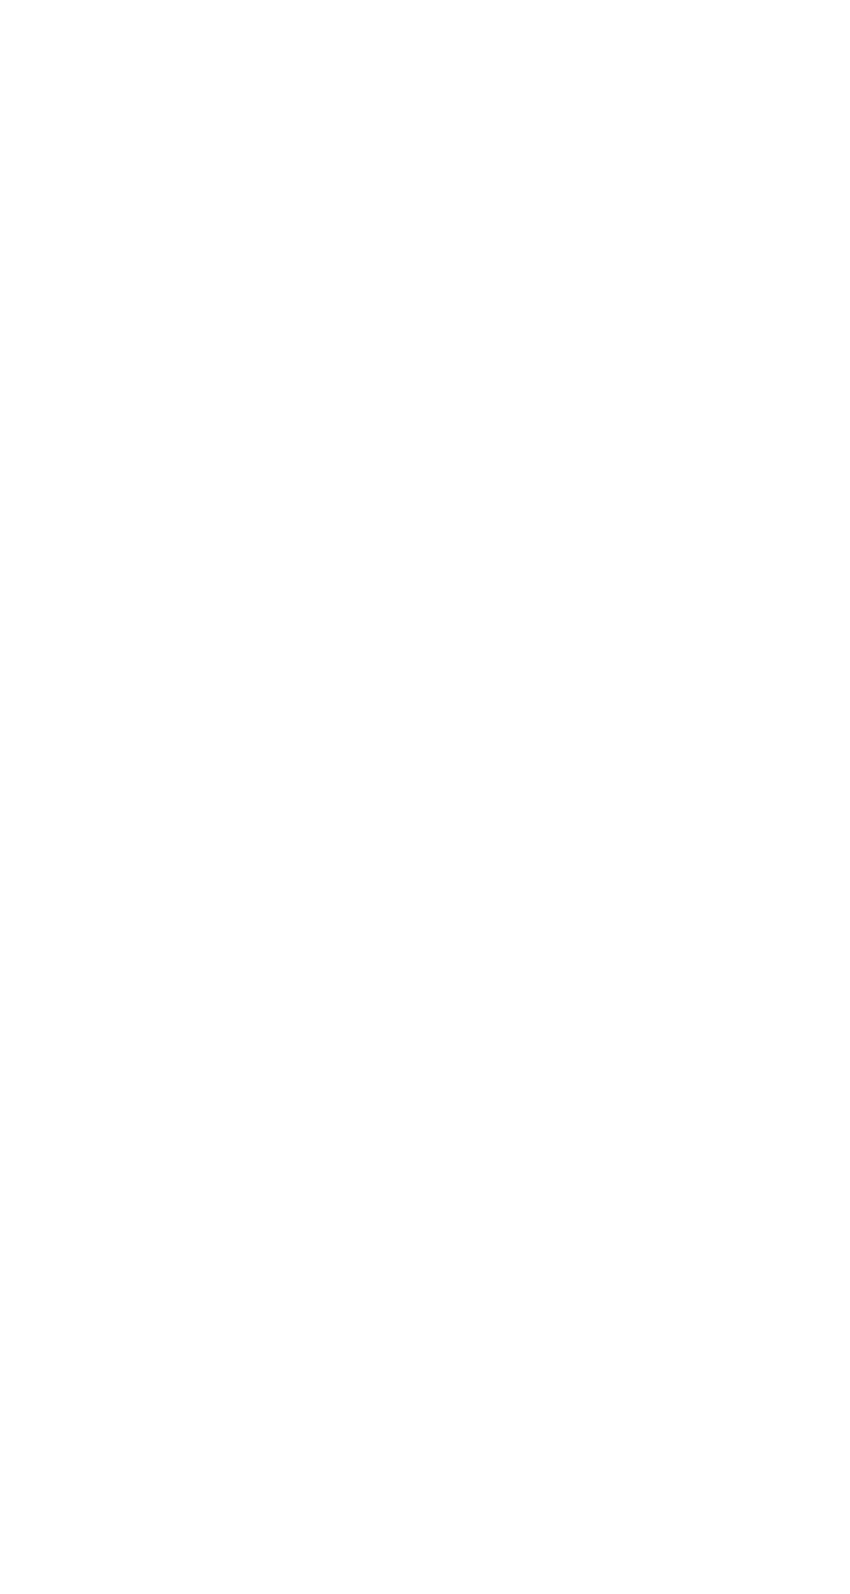 Synlogic logo for dark backgrounds (transparent PNG)